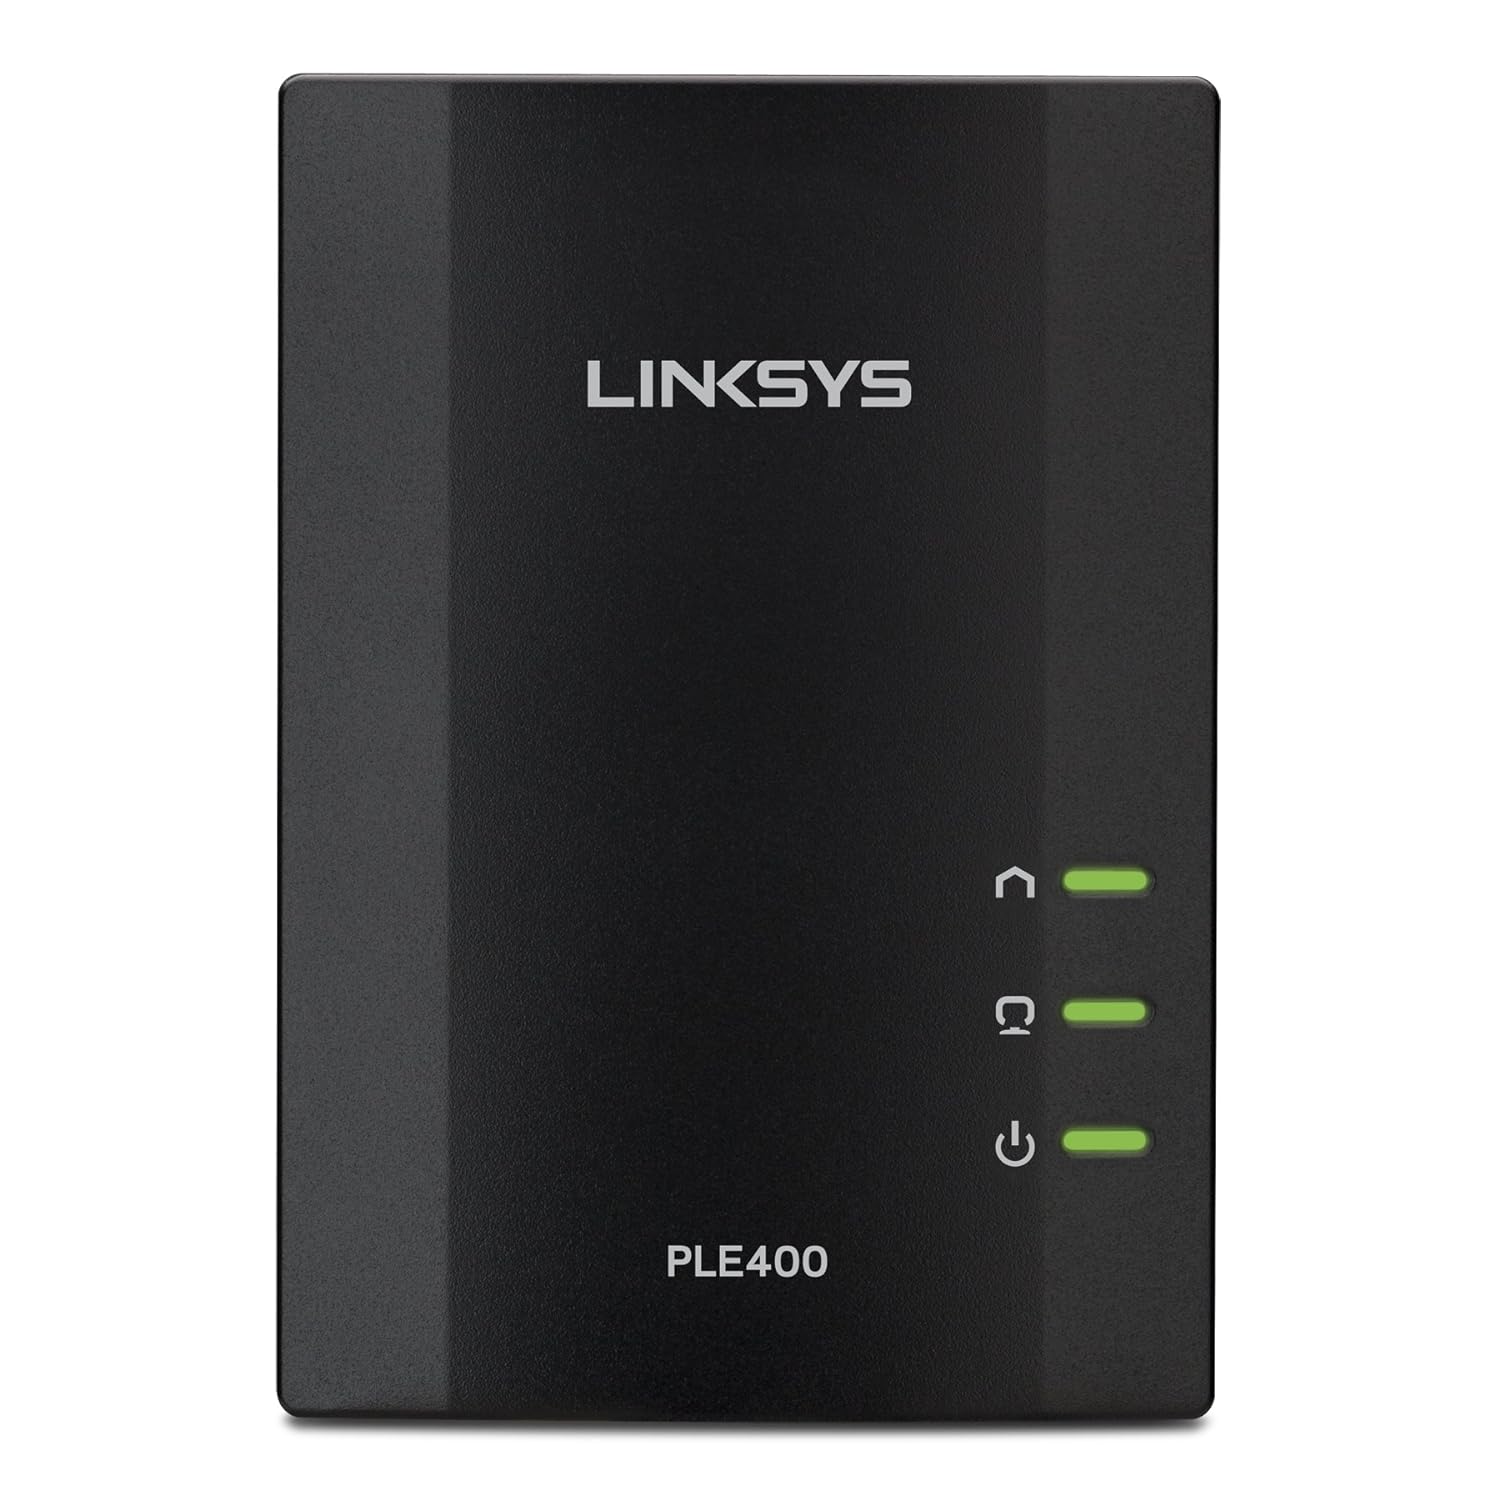 Linksys Powerline AV 1-Port Network Adapter Kit (PLEK400)